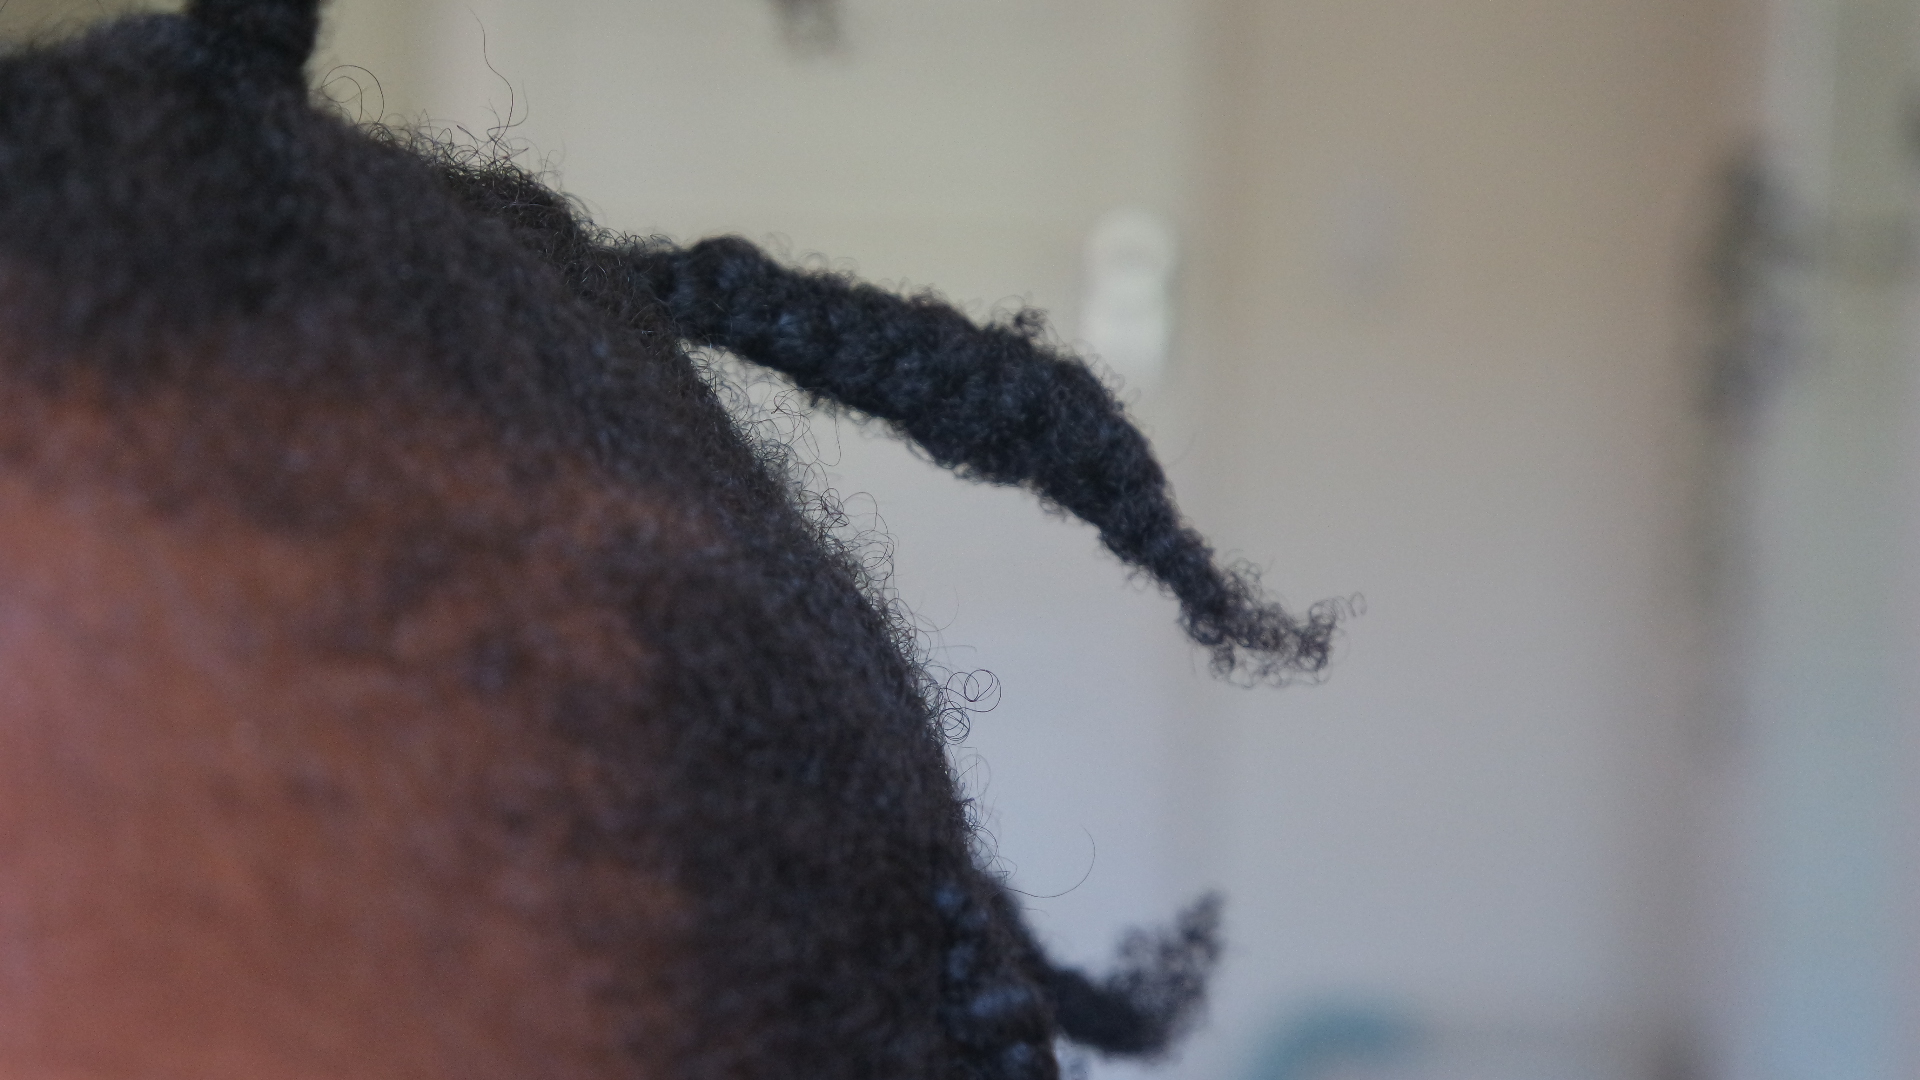 Trimming 4c natural hair